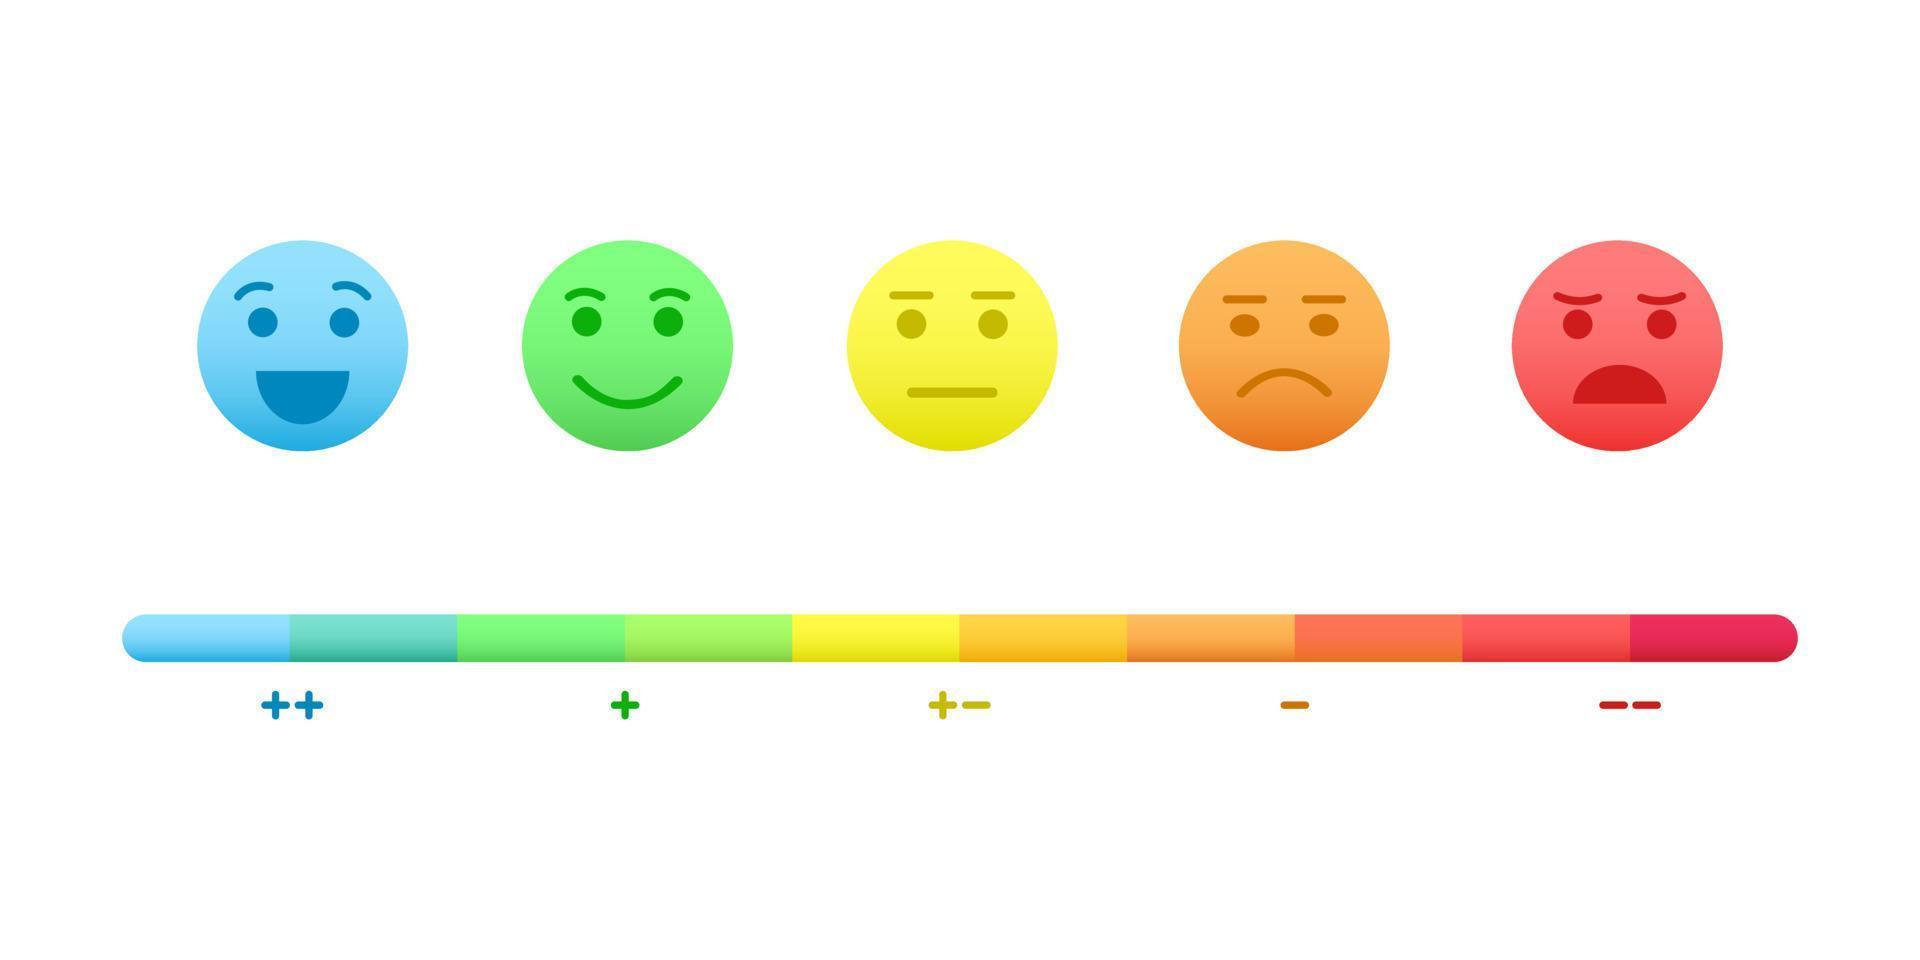 Stimmungsskala. Gesichter mit unterschiedlichen Emotionen von fröhlich bis wütend und farbenfrohe Bewertungsbalken mit Plus-, Minus- und Neutralzeichen. Infografik-Design für den Kundenservice vektor